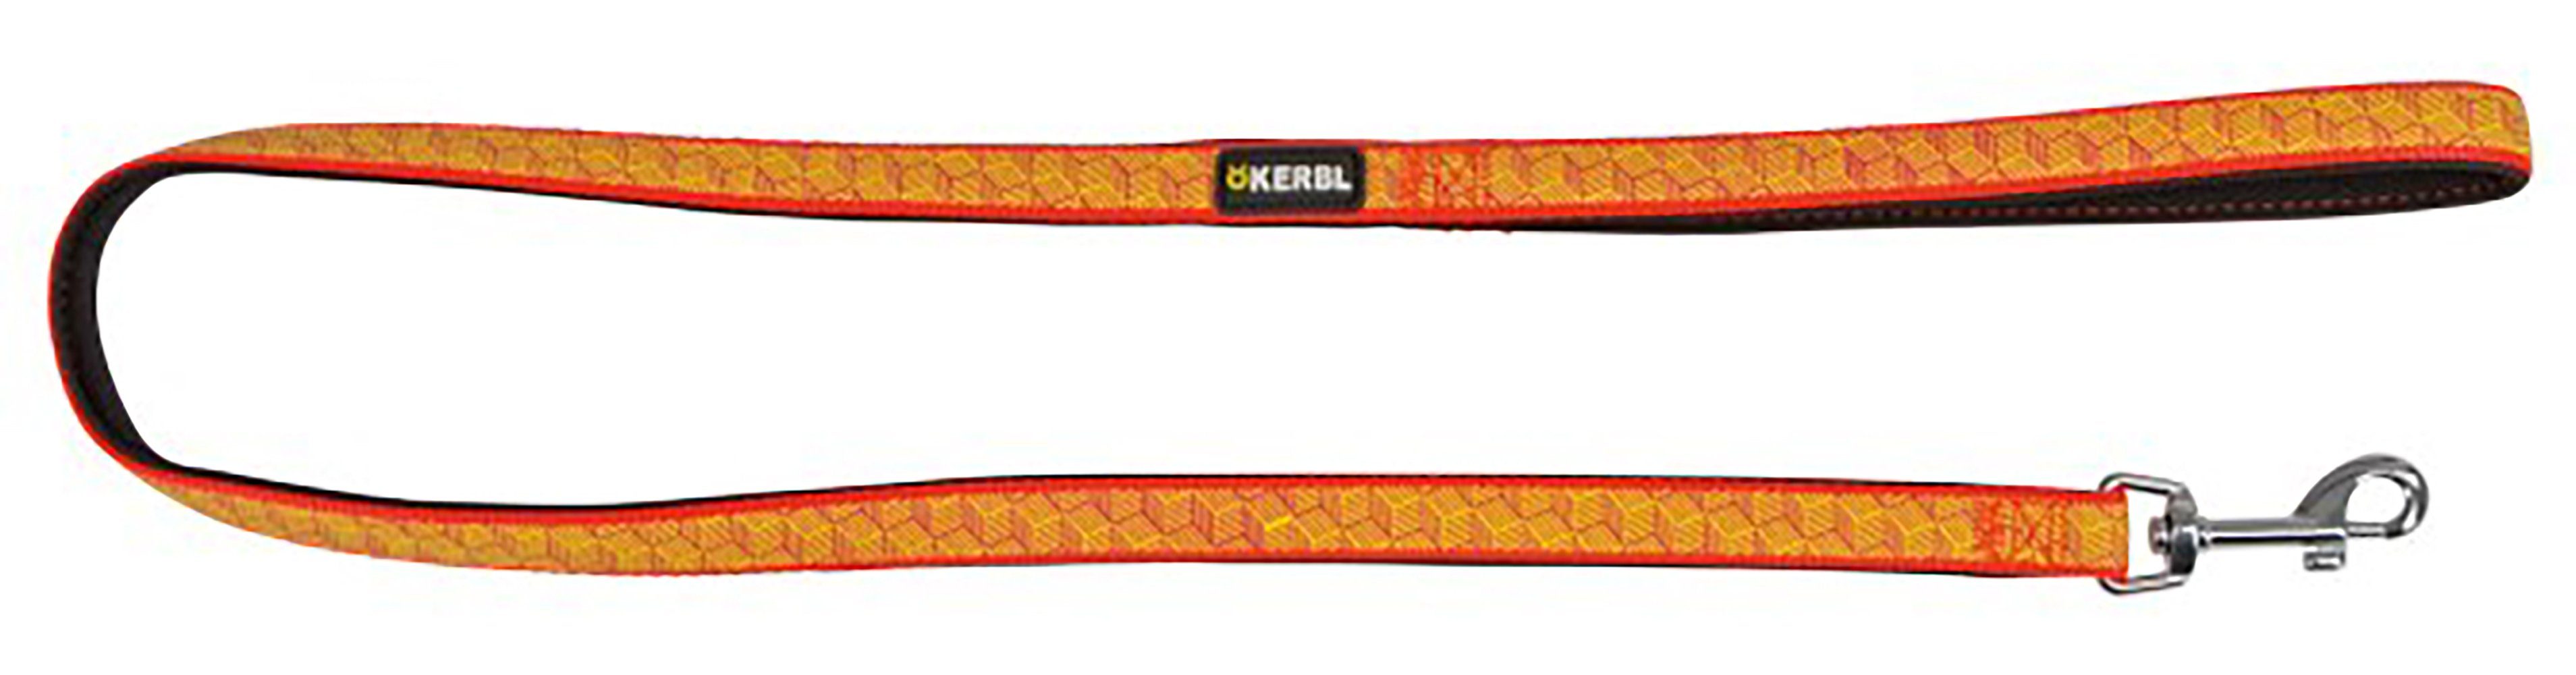 Kerbl Hundeleine Kerbl Leine, reflektierend, schwarz/orange, 15 mm x 100 cm, 81056